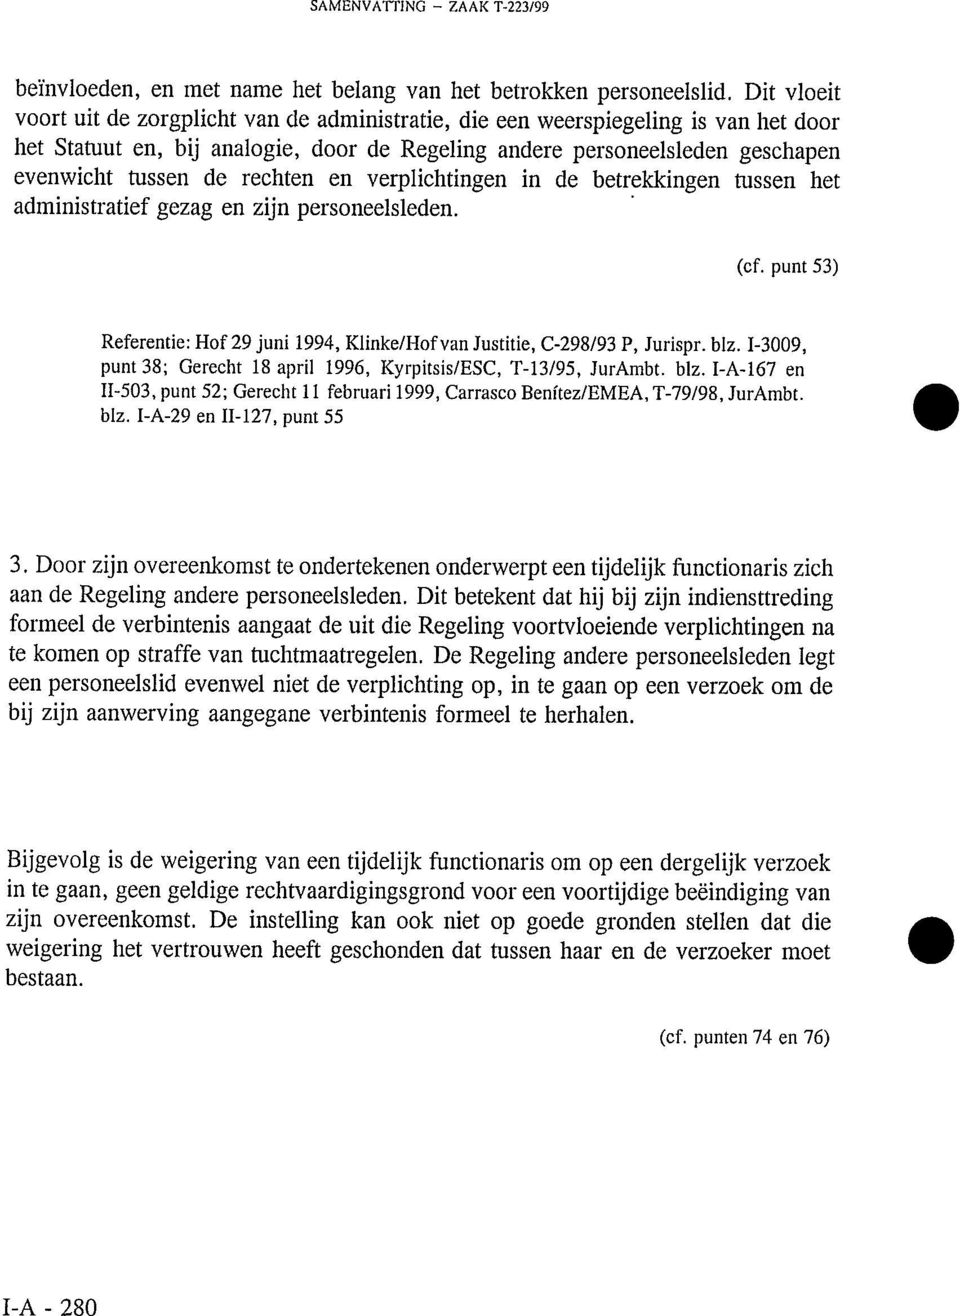 rechten en verplichtingen in de betrekkingen tussen het administratief gezag en zijn personeelsleden. (cf. punt 53) Referentie: Hof 29 juni 1994, Klinke/Hofvan Justitie, C-298/93 P, Jurispr. blz.